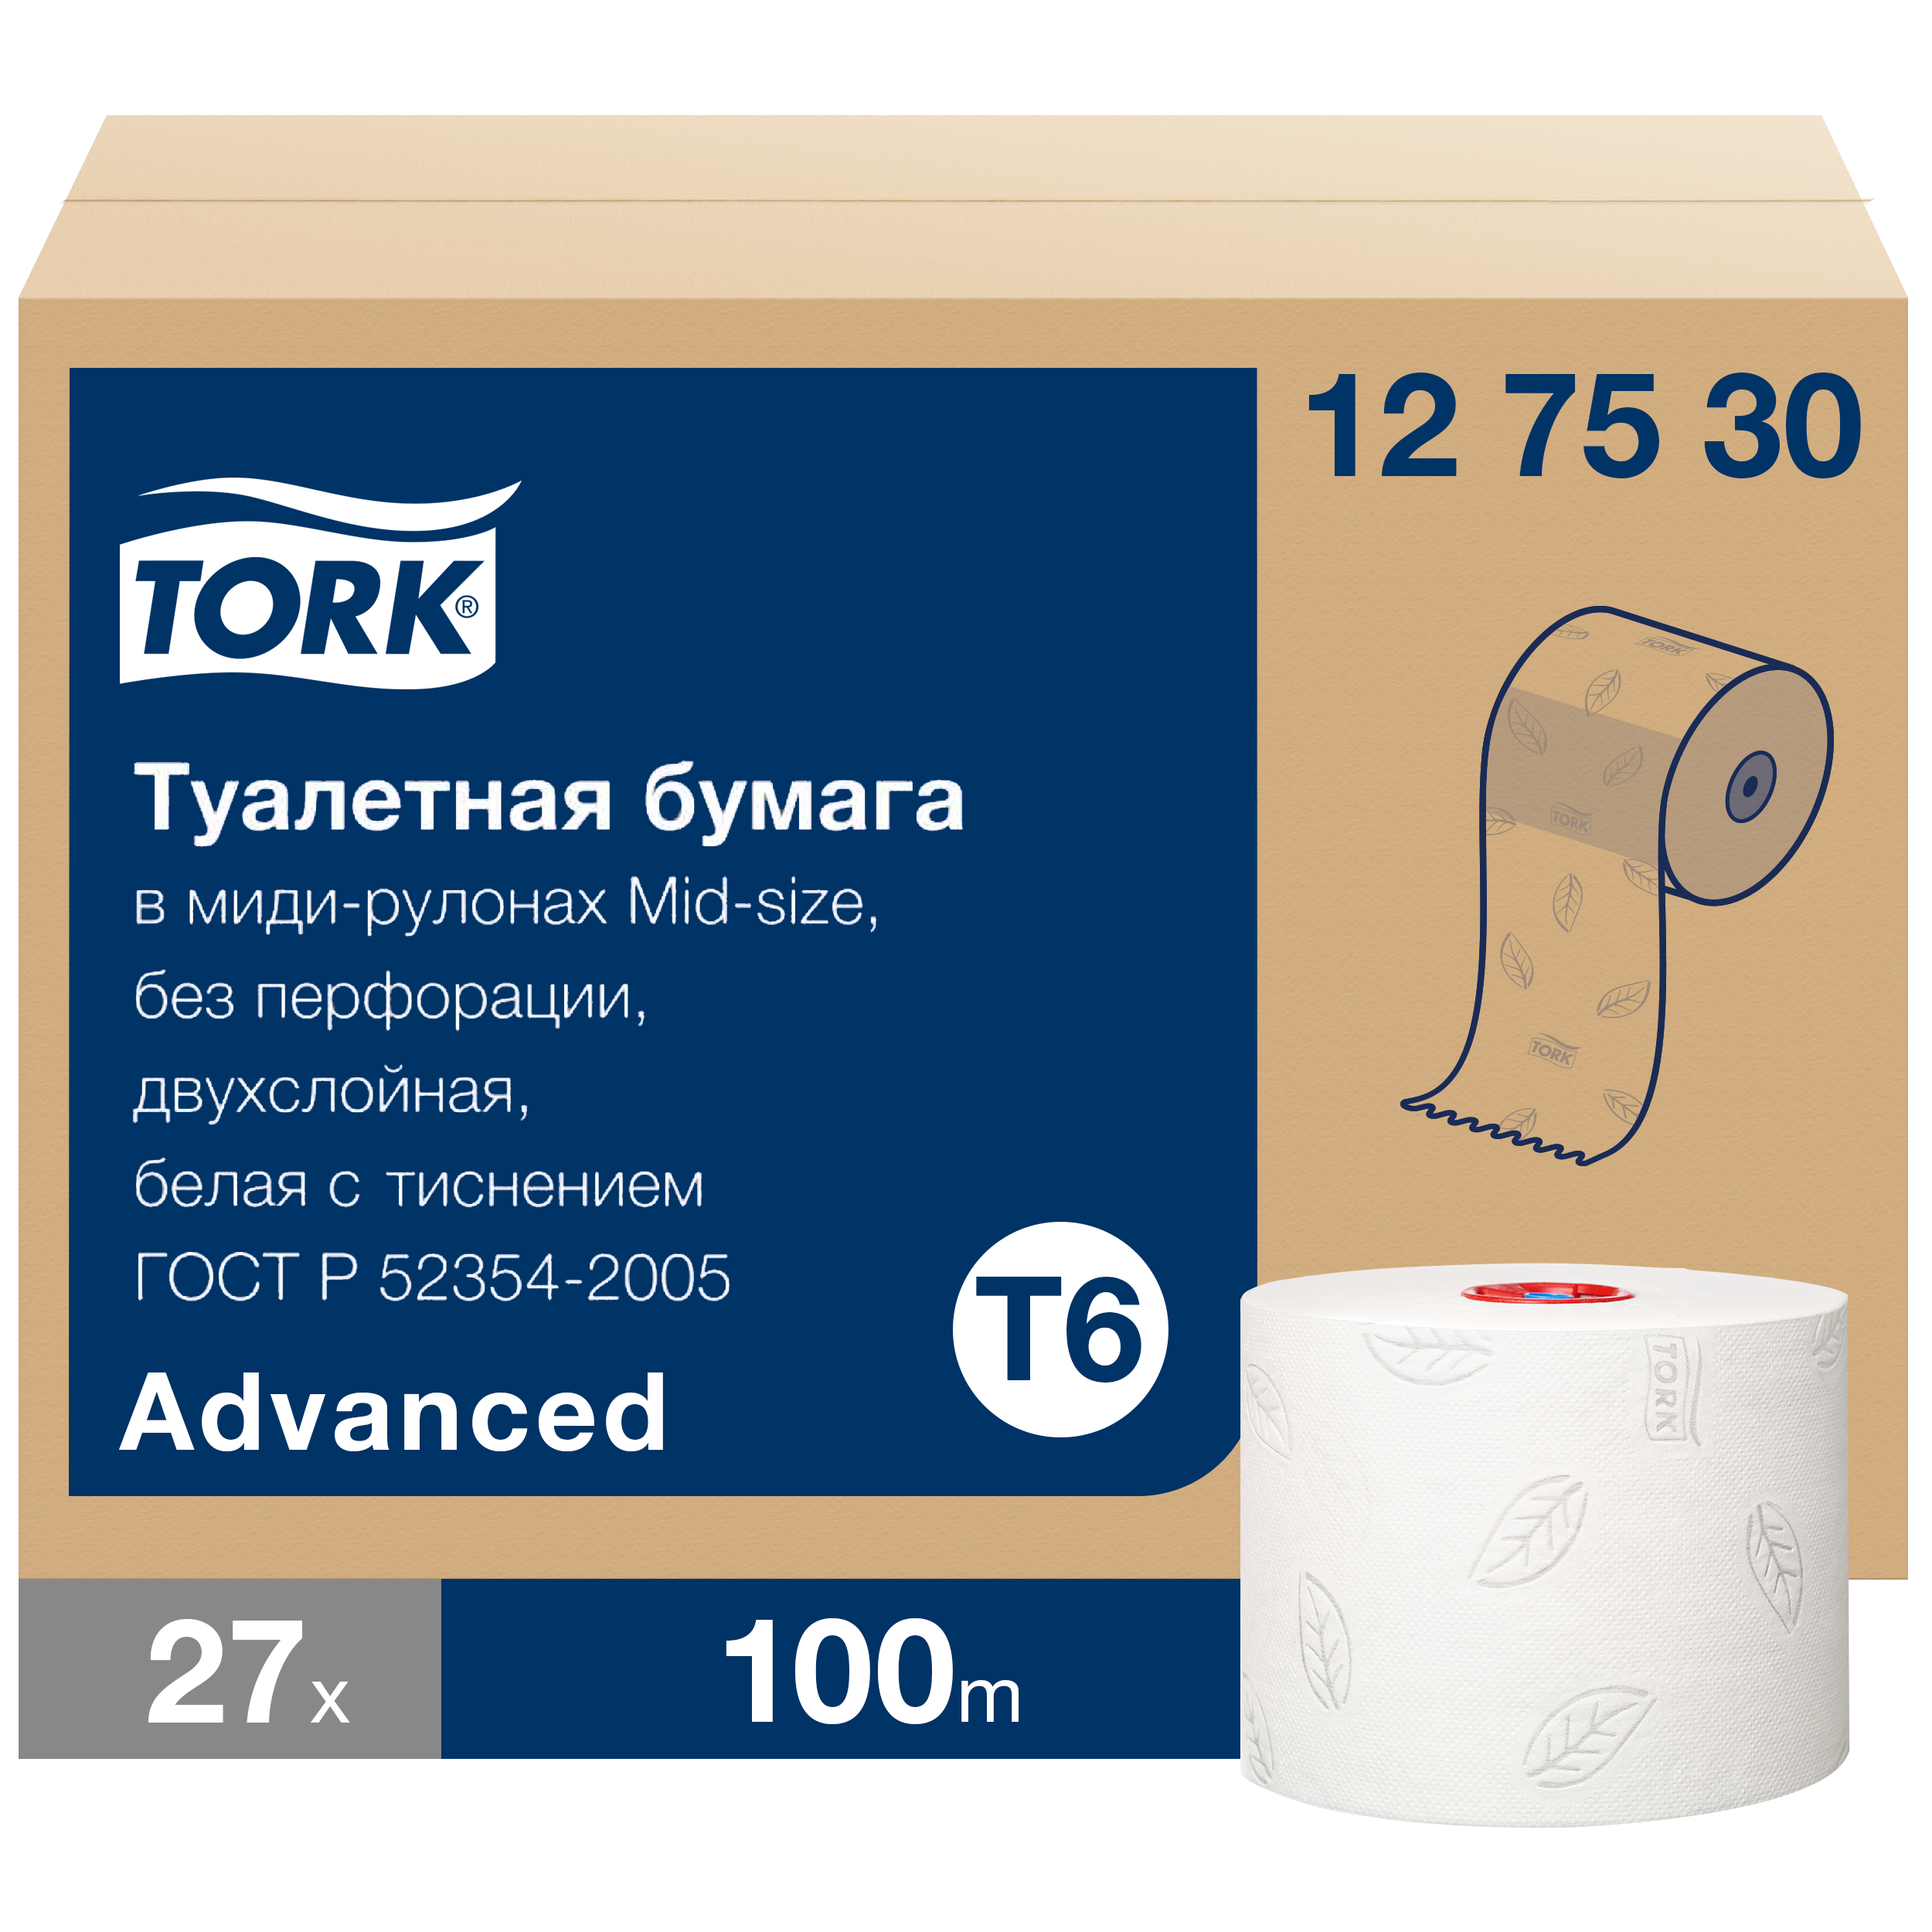 Бумага туалетная Tork Mid-size Advanced в рулонах, T6, 2 слоя, 100м, 27 рулонов конструкционные упаковочные материалы учебное пособие